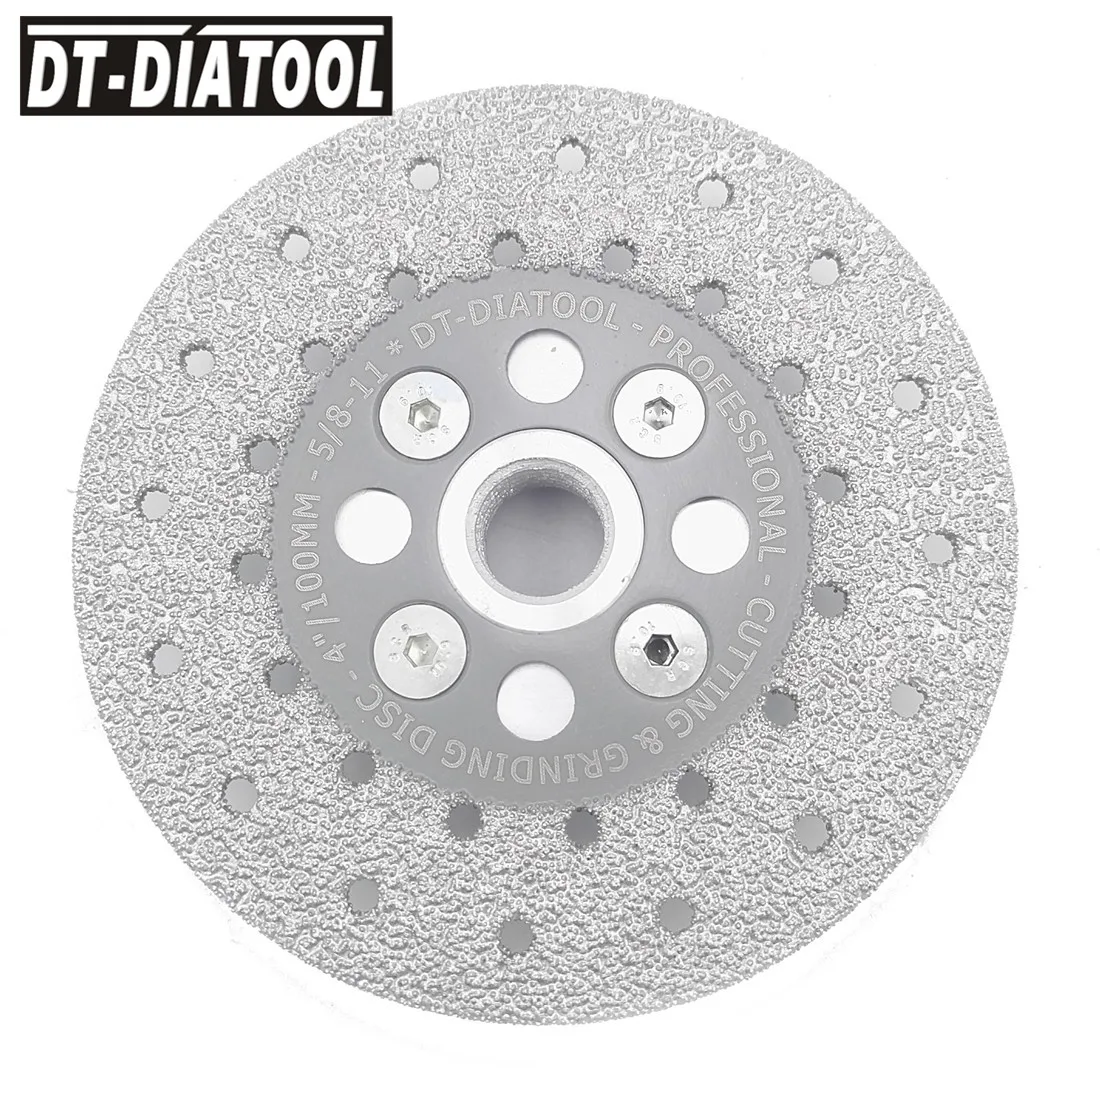 DT-DIATOOL 1 шт. двухсторонний вакуумный паяный Алмазный диск с 5/8-11 фланцем шлифовальный круг пильный диск для гранита и бетона